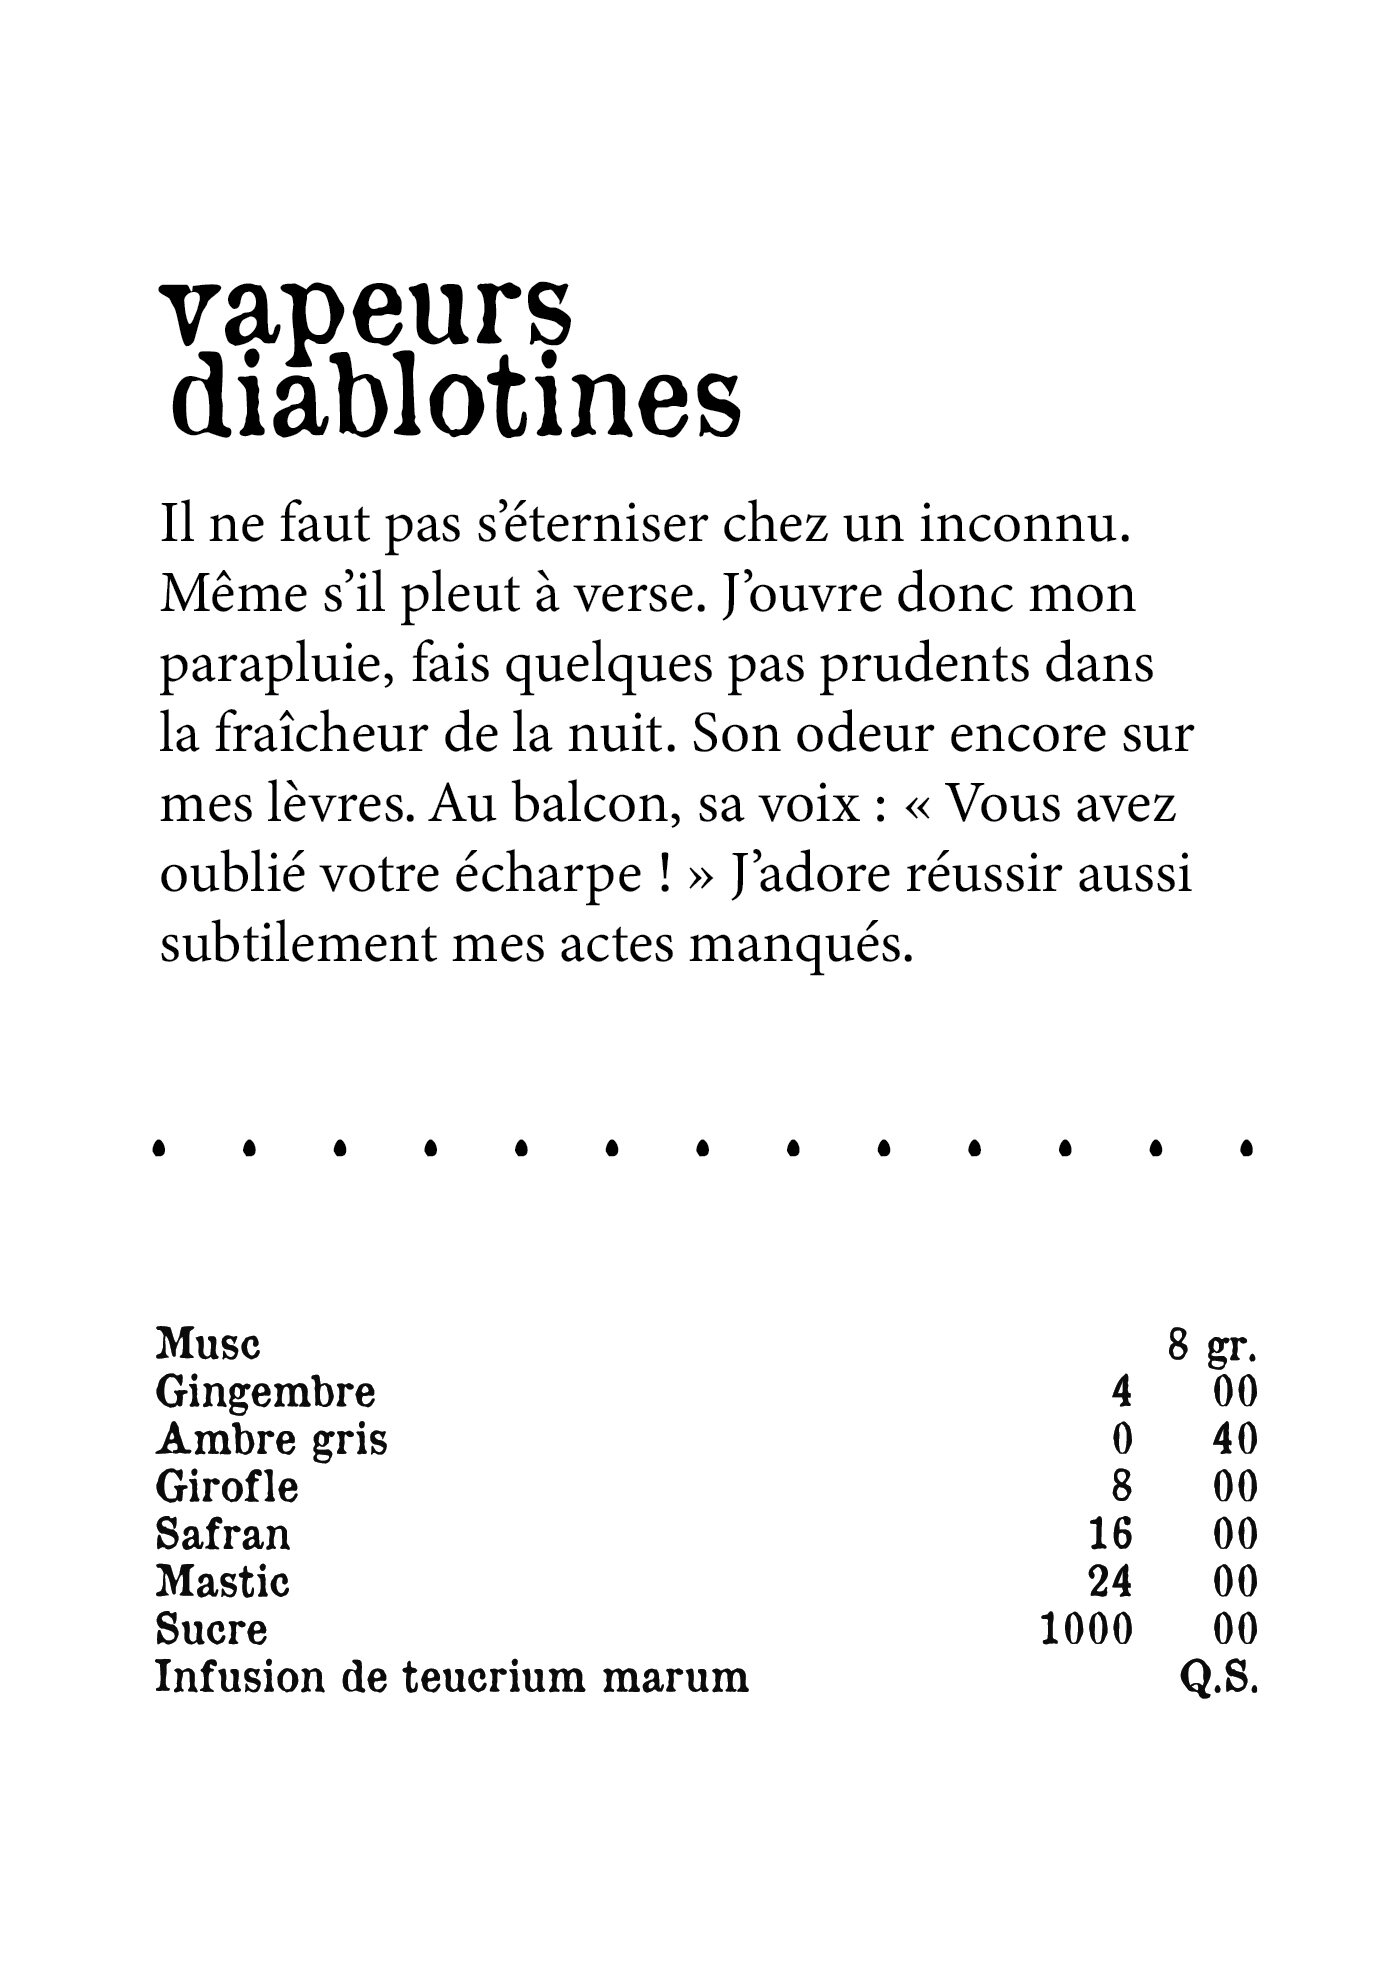 Vapeurs diablotines+recipe+FR.jpg